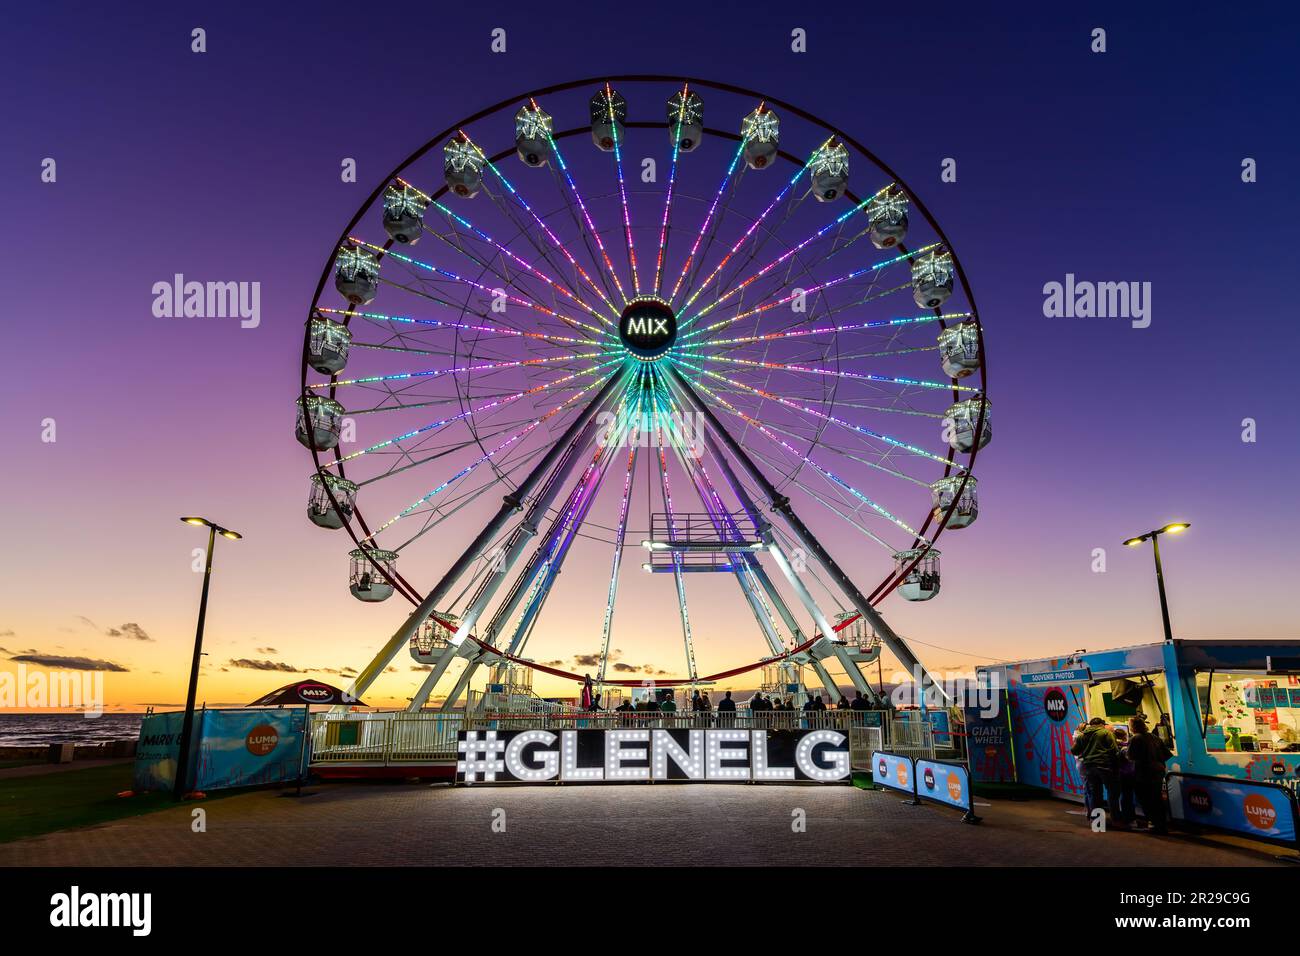 Adélaïde, Australie méridionale - 22 février 2021 : Grande roue Glenelg Mix102,3 sur la place Moseley illuminée au crépuscule, vue sur la plage Banque D'Images